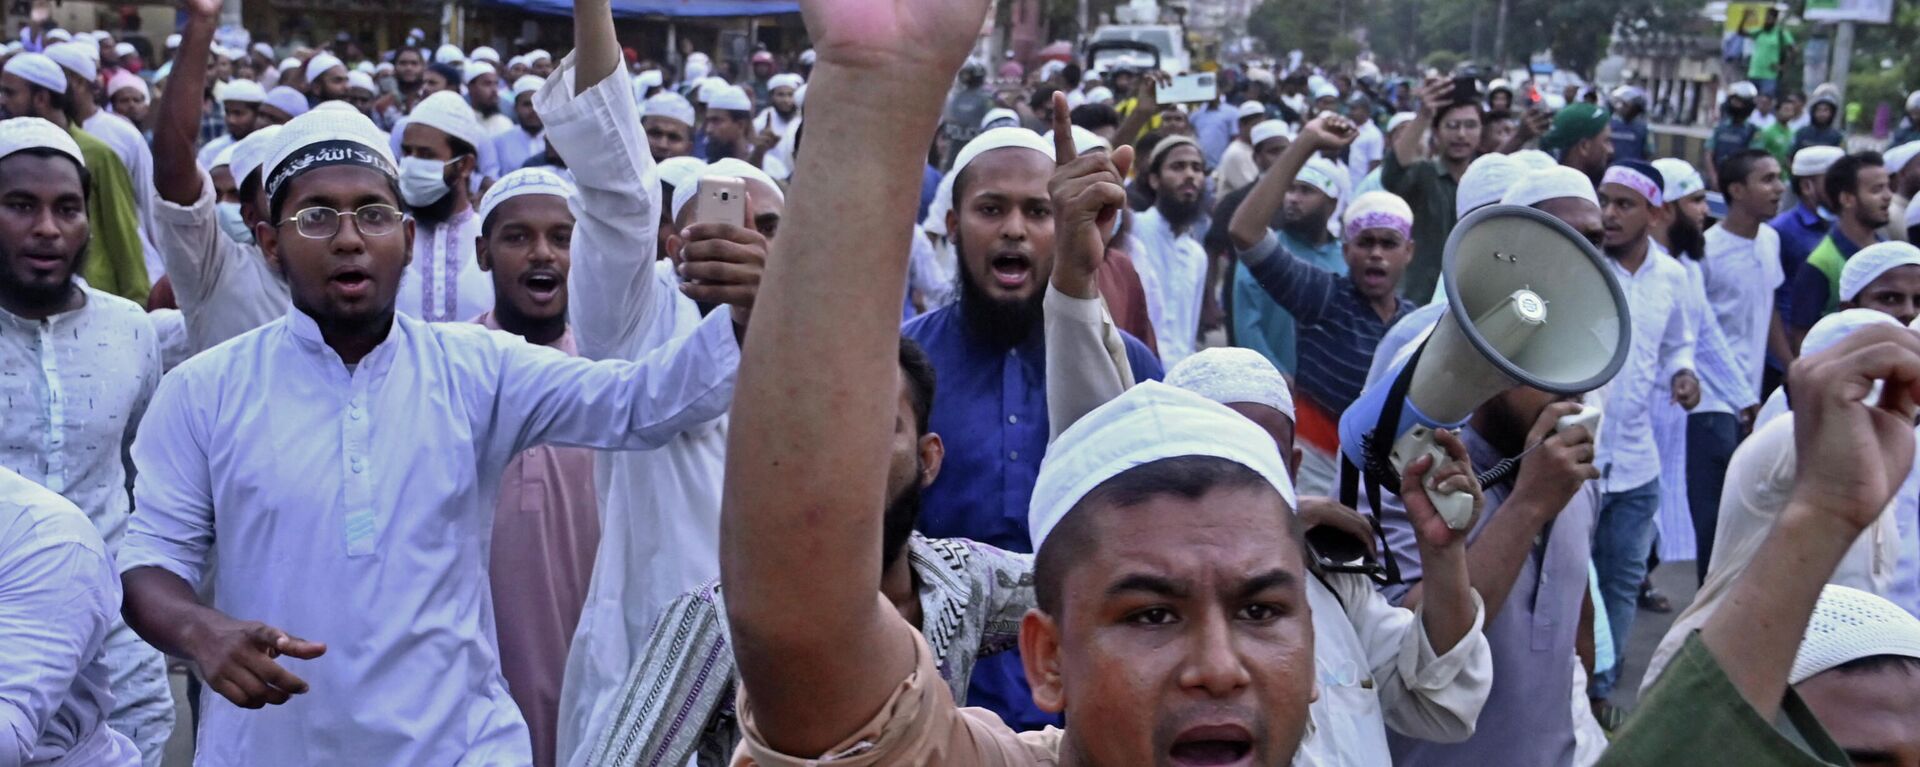 Hindu-Müslüman geriliminin arttığı Bangladeş'te, Kur'an-ı Kerim'e saygısızlık yapıldığı gerekçesiyle patlak veren olaylarda ölü sayısı 6'ya çıktı. - Sputnik Türkiye, 1920, 16.10.2021